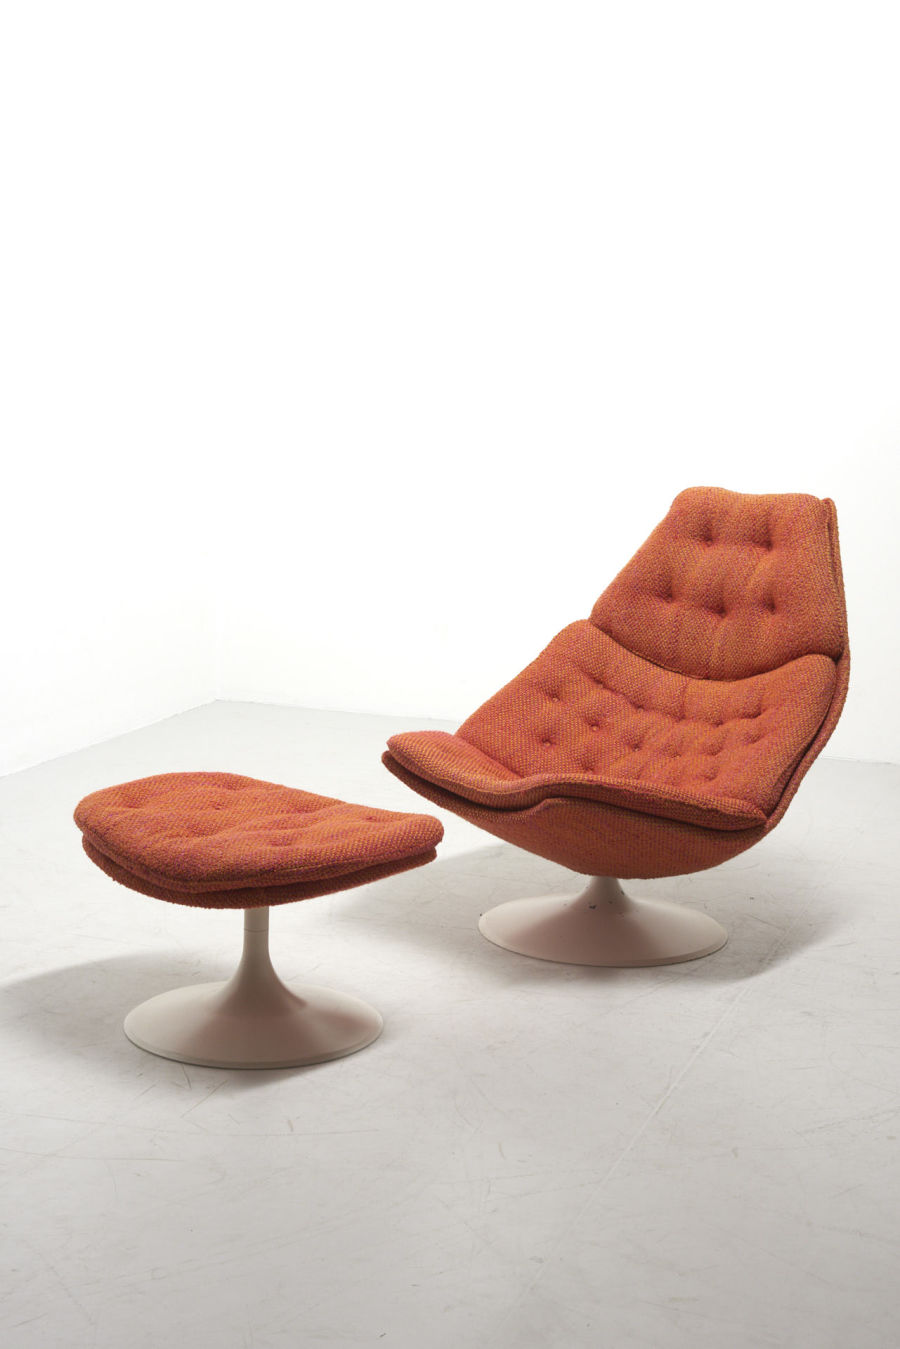 modestfurniture-vintage-2768-geoffrey-harcourt-f588-lounge-chair-artifort11